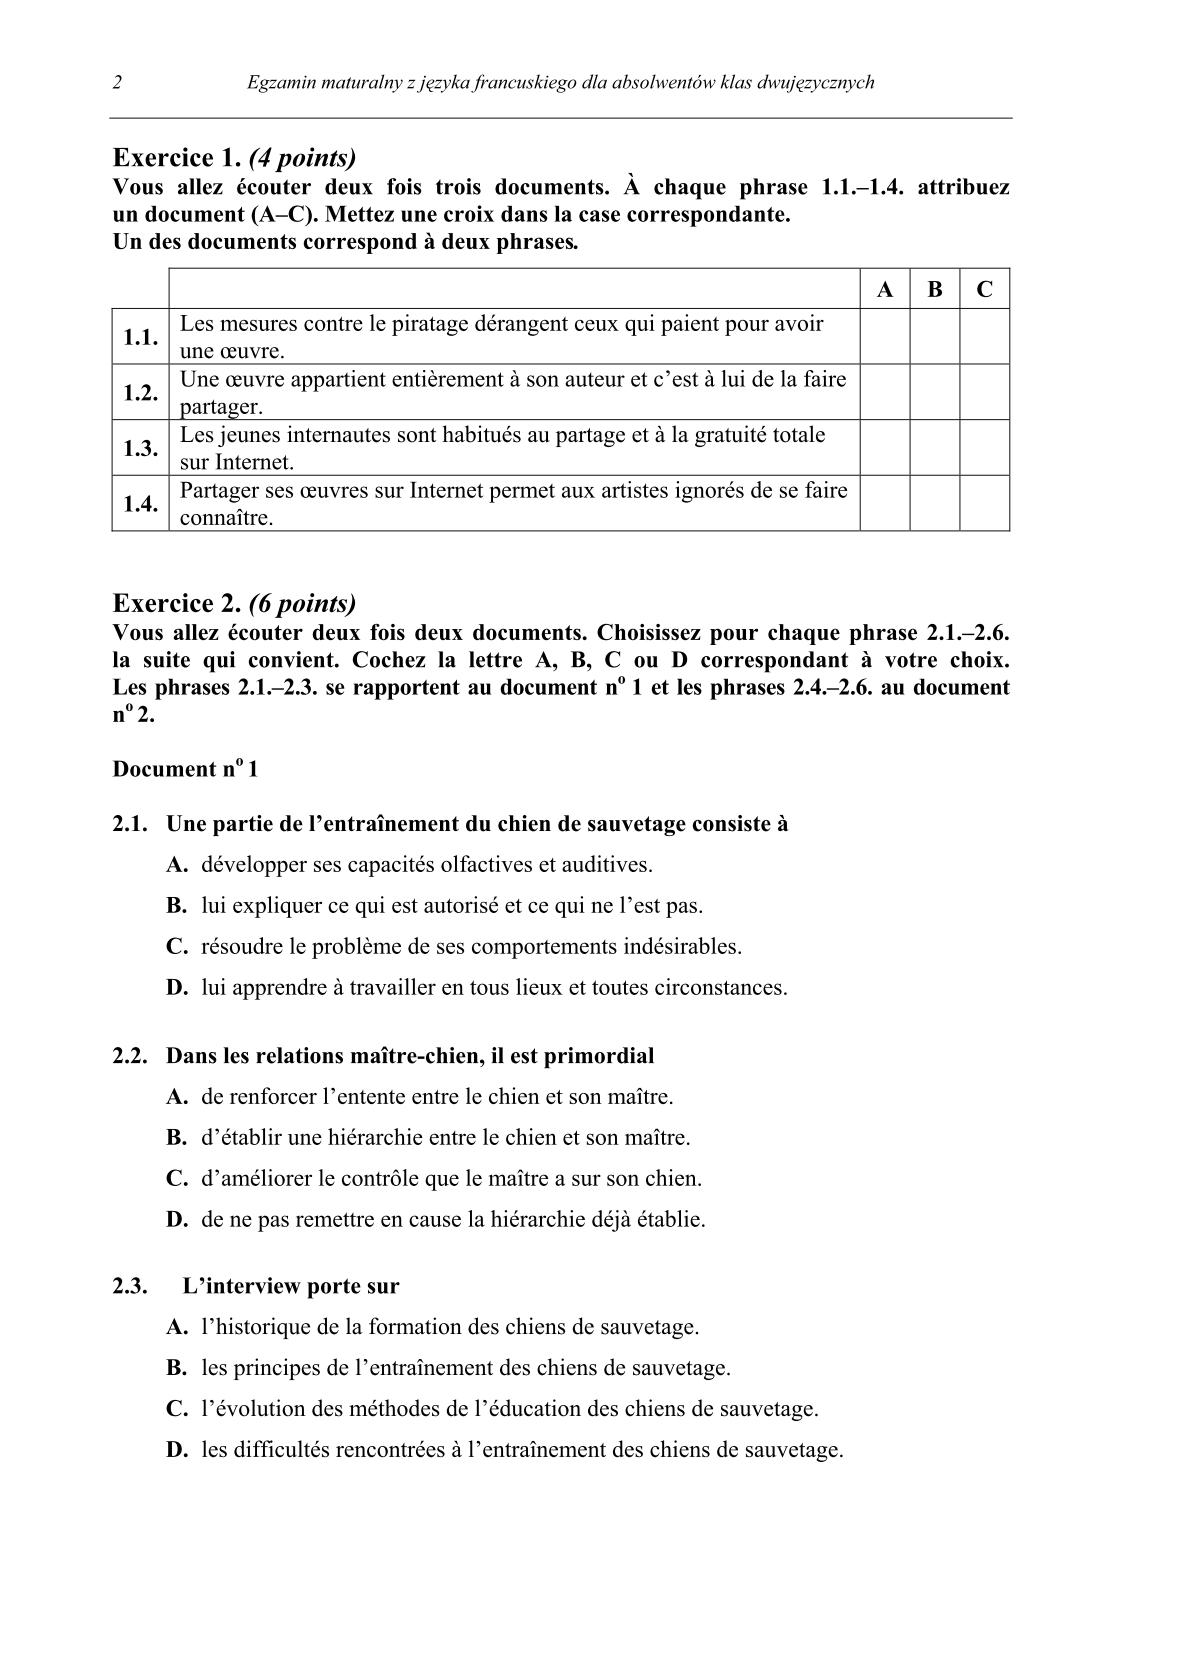 pytania-jezyk-francuski-dla-absolwentow-klas-dwujezycznych-matura-2014-str.2